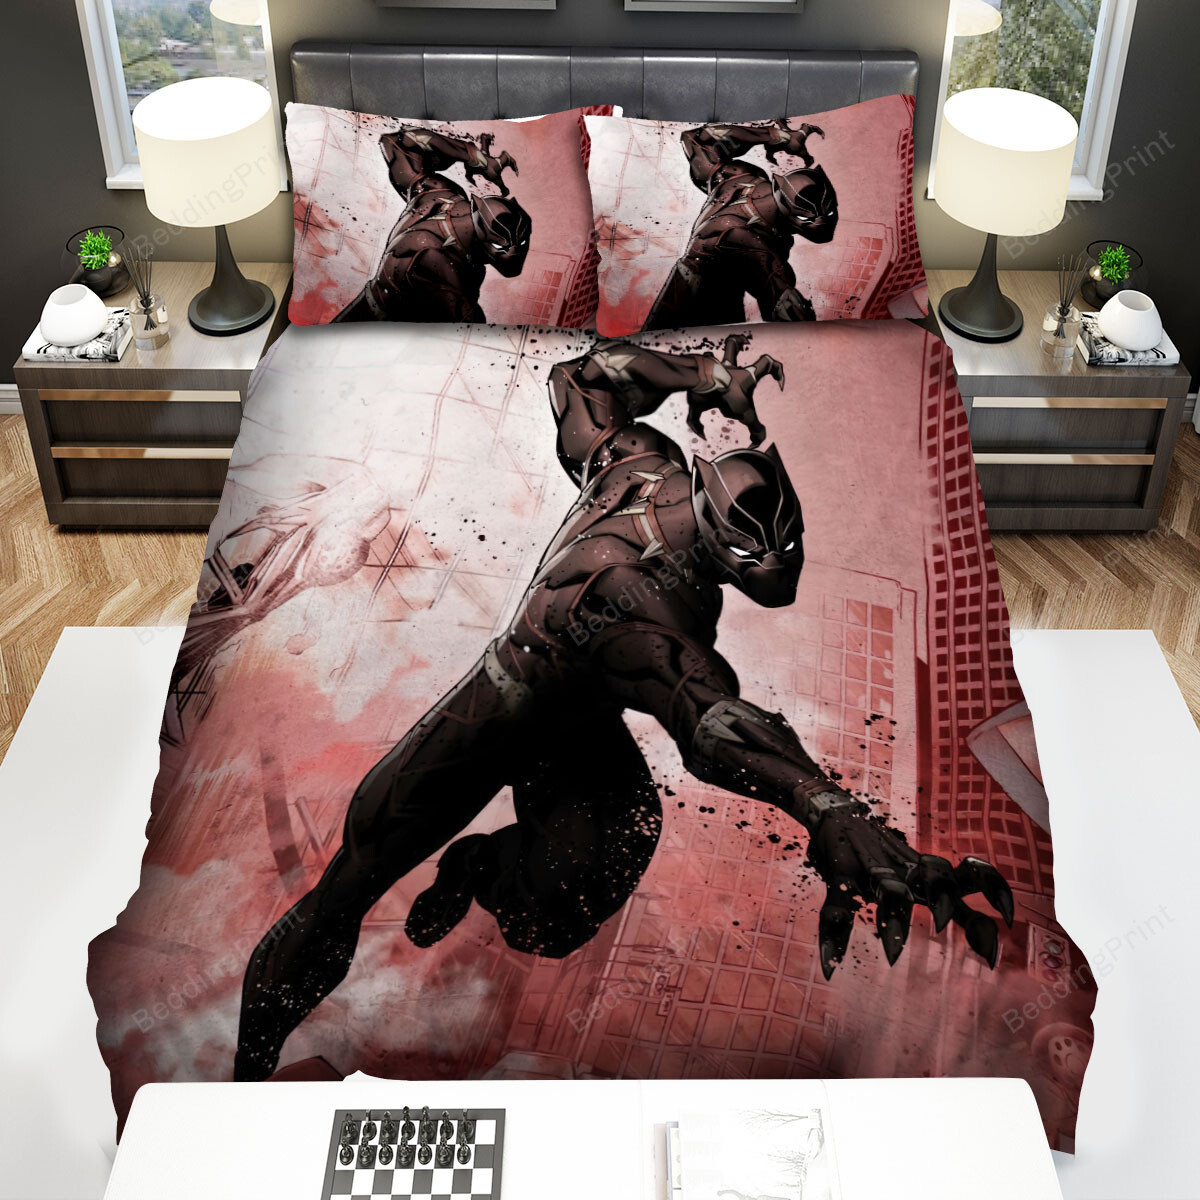 Marvel Dark Edition Black Panther Bed Sheets Spread Comforter Duvet Cover Bedding Sets